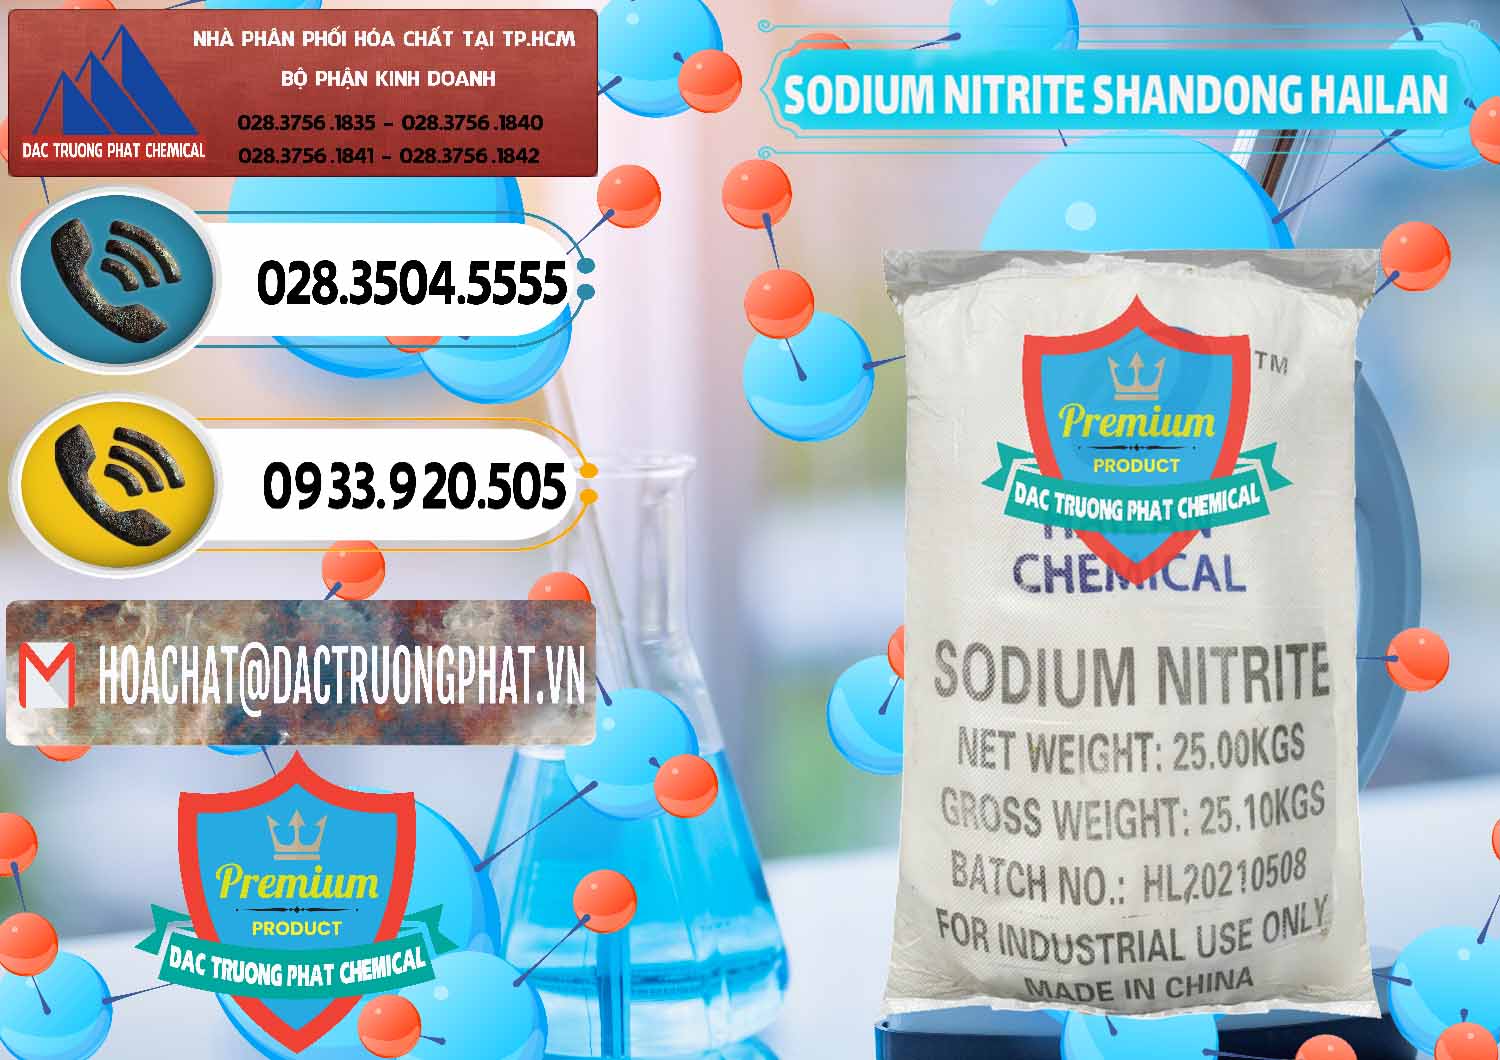 Cty chuyên kinh doanh - bán Sodium Nitrite - NANO2 99.3% Shandong Hailan Trung Quốc China - 0284 - Công ty chuyên bán ( cung cấp ) hóa chất tại TP.HCM - hoachatdetnhuom.vn